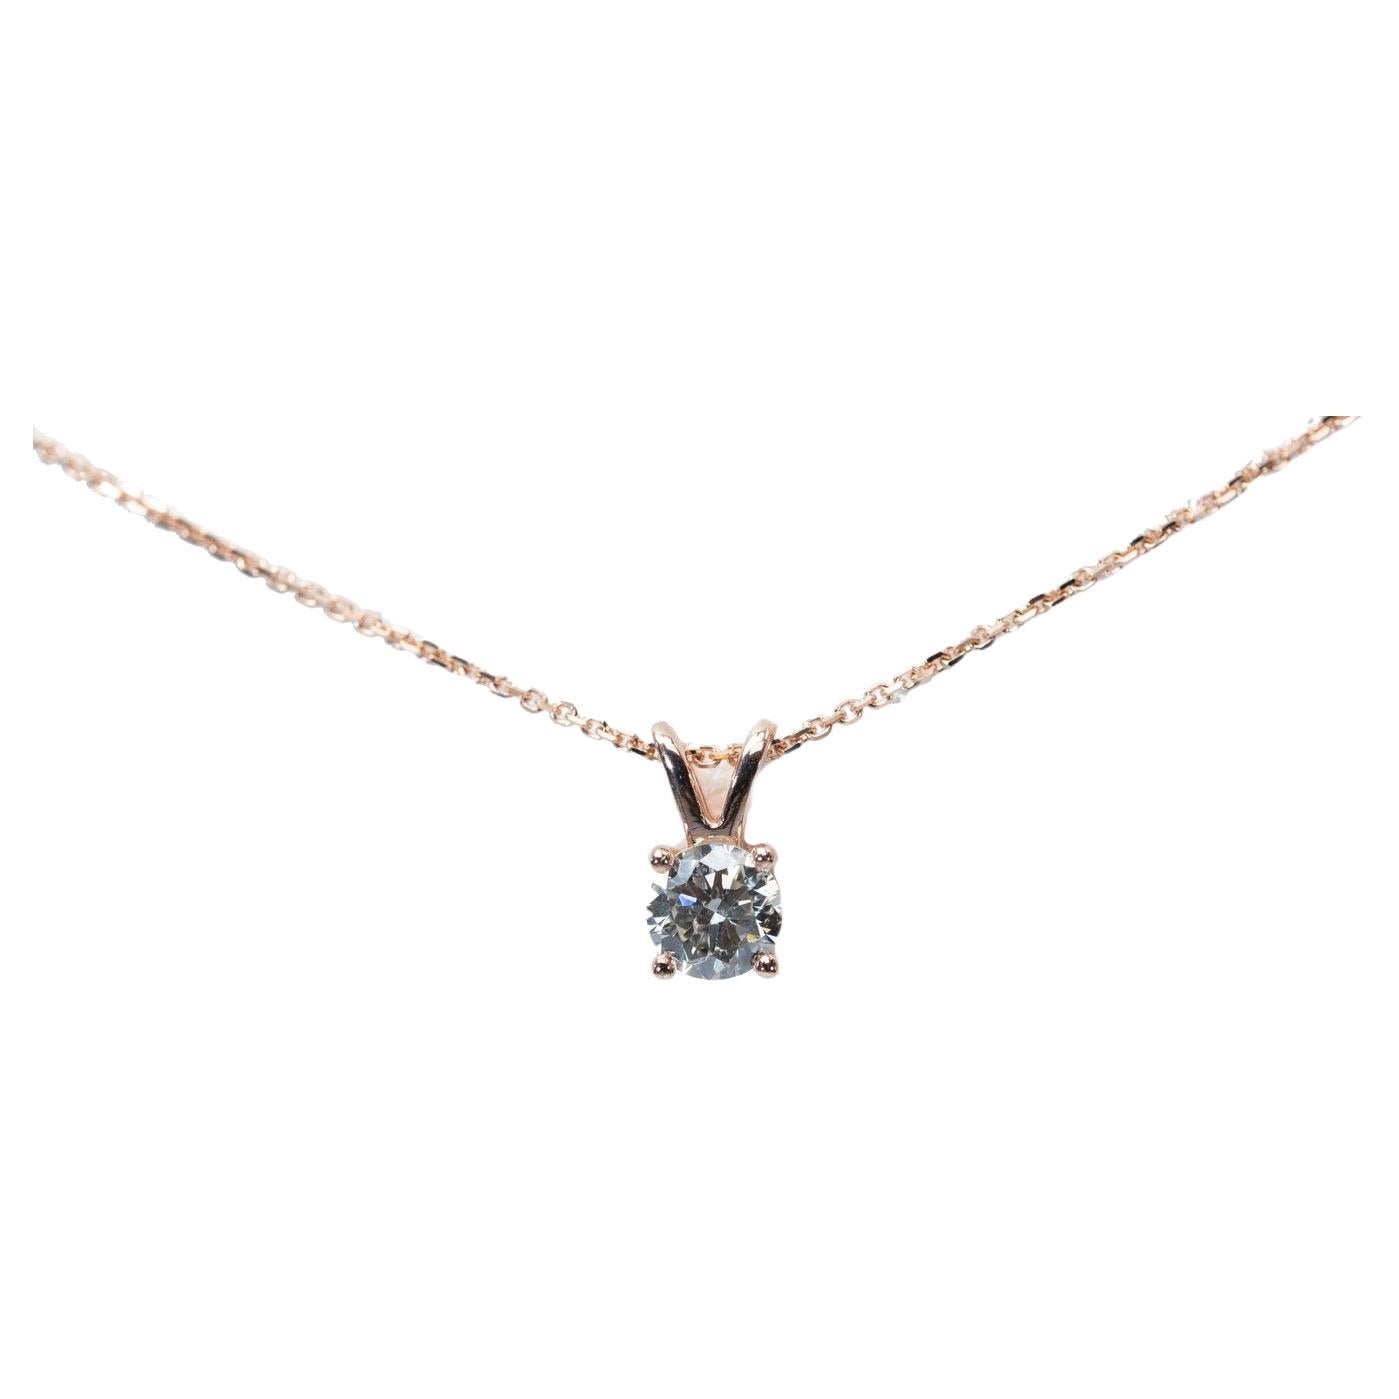 Magnifique collier et pendentif en or rose 18 carats avec un diamant naturel de 0,8 carat certifié GIA